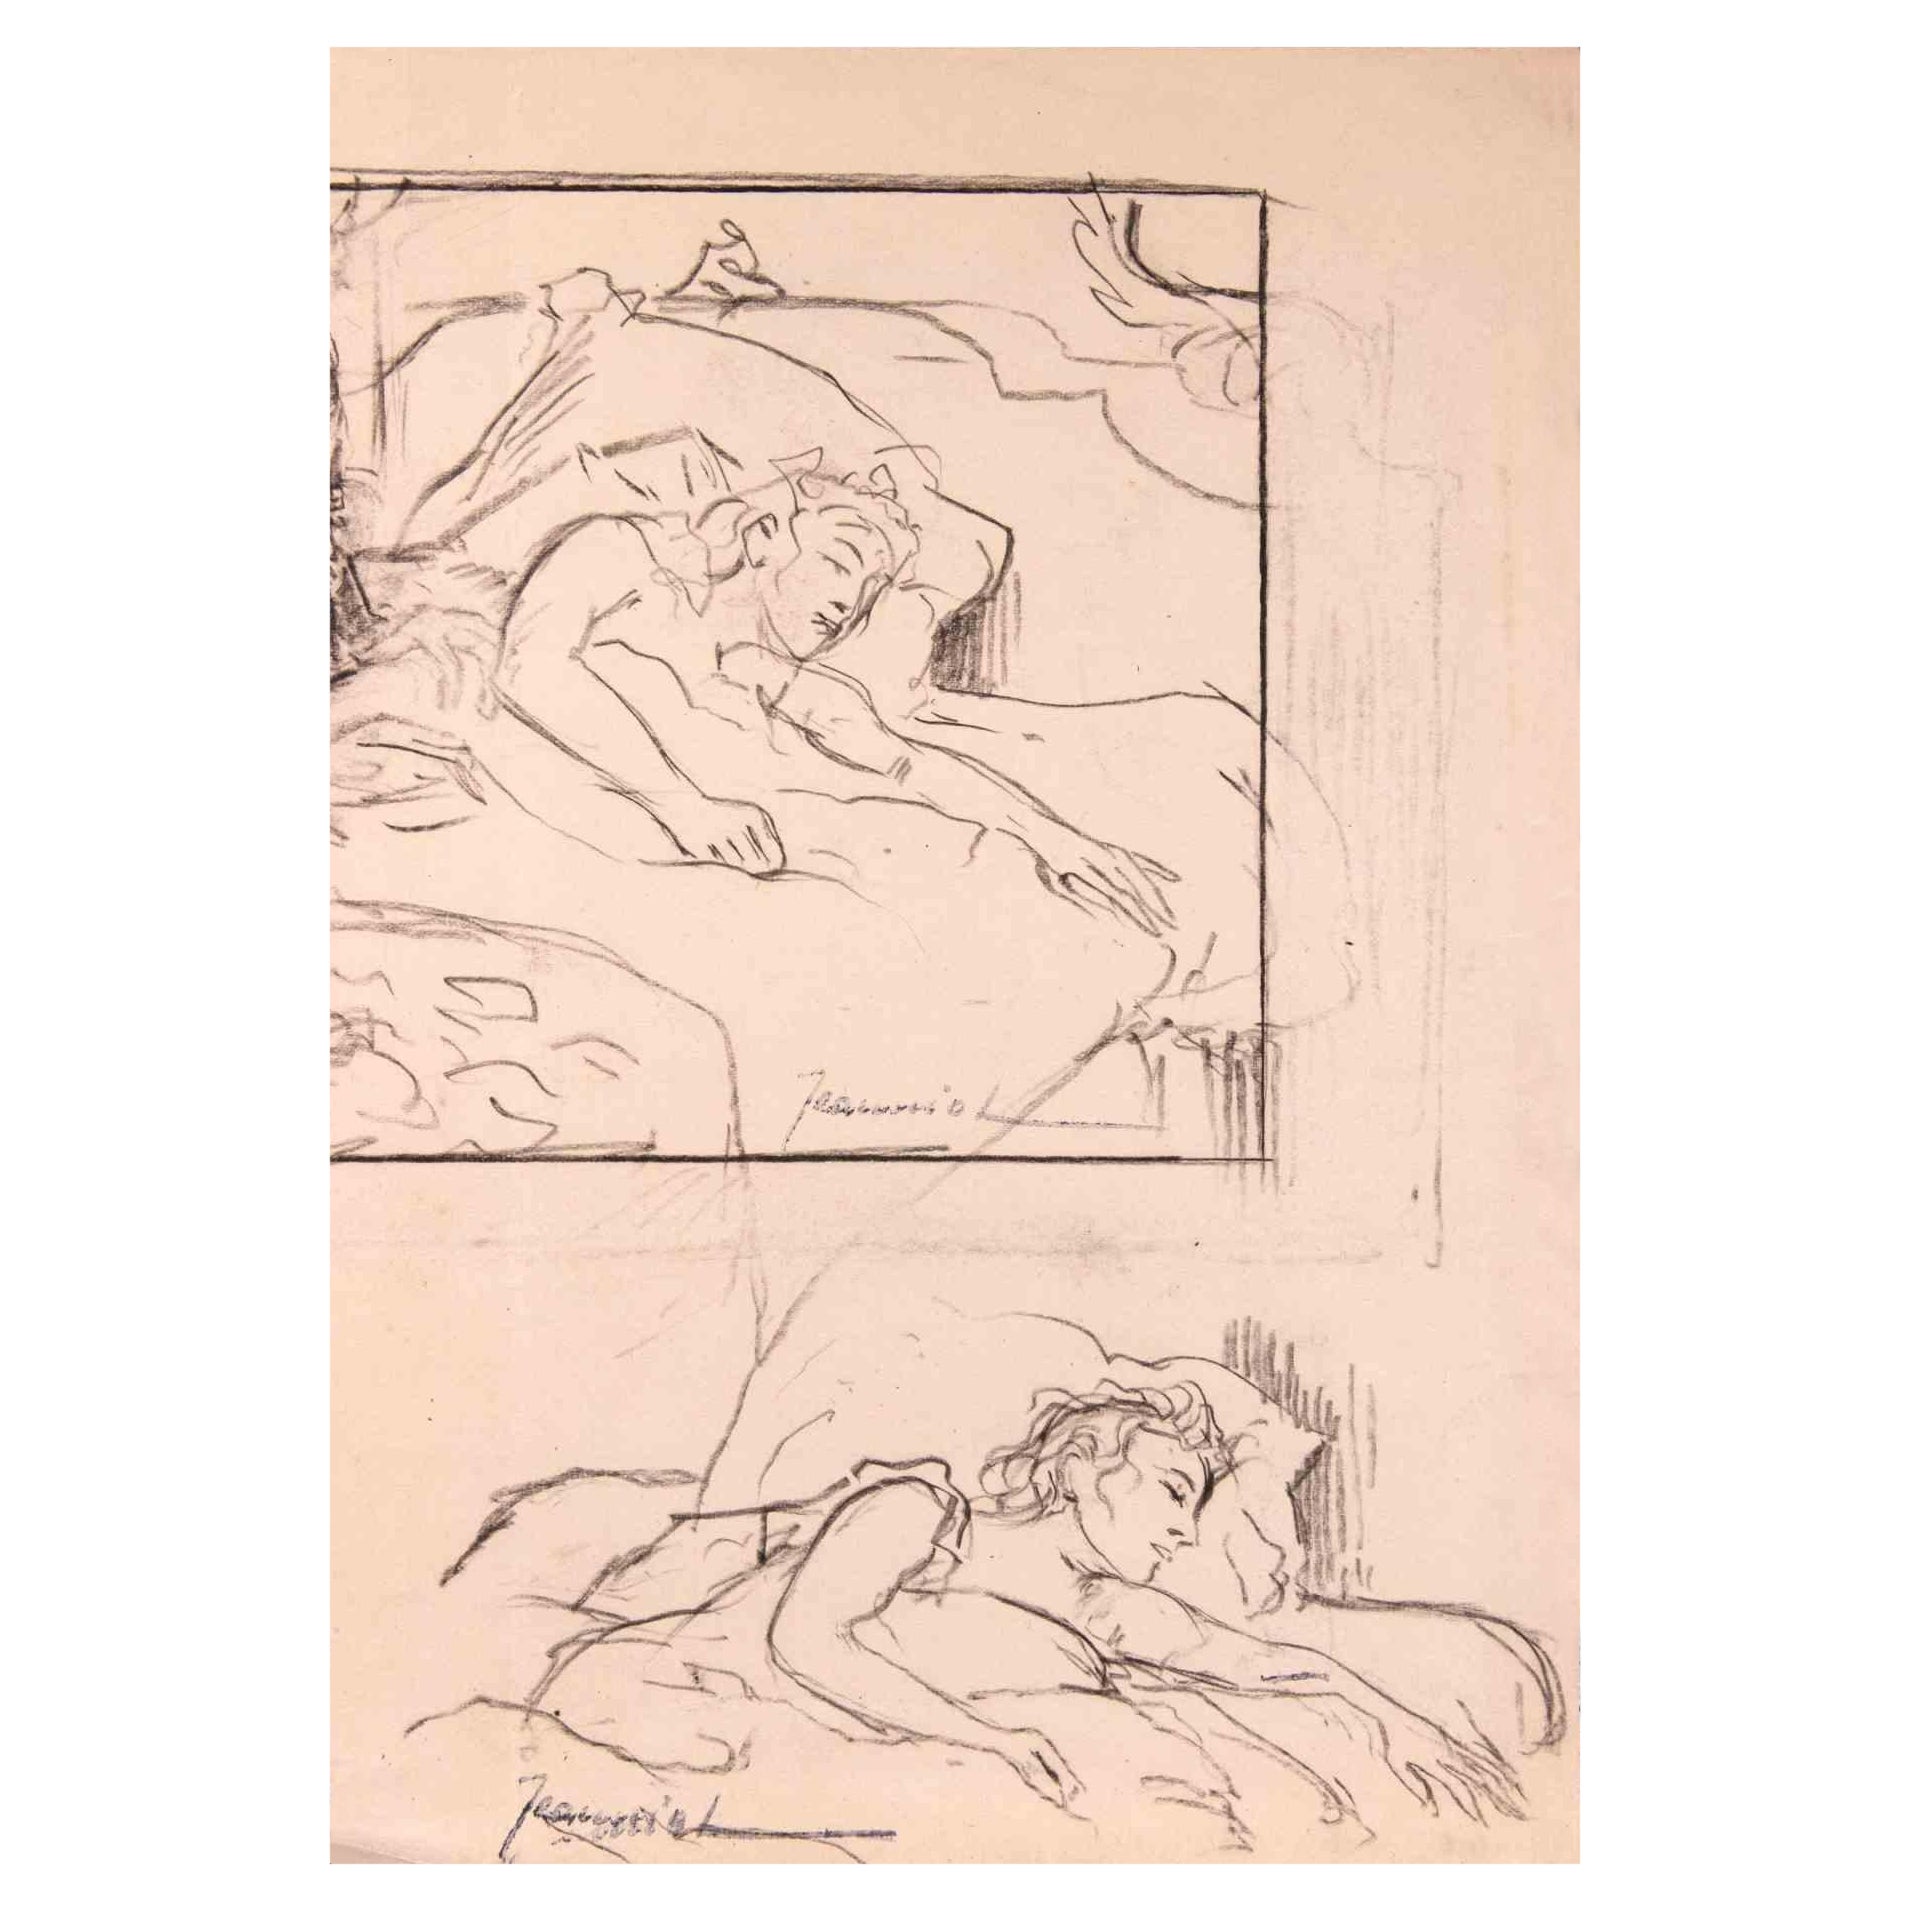 Figures ist eine Original-Zeichnung auf Papier des Malers Pierre Georges Jeanniot (1848-1934).

Zeichnung in Kohle.

Signiert auf der unteren Seite.

Gute Bedingungen.

Pierre-Georges Jeanniot (1848-1934) war ein schweizerisch-französischer